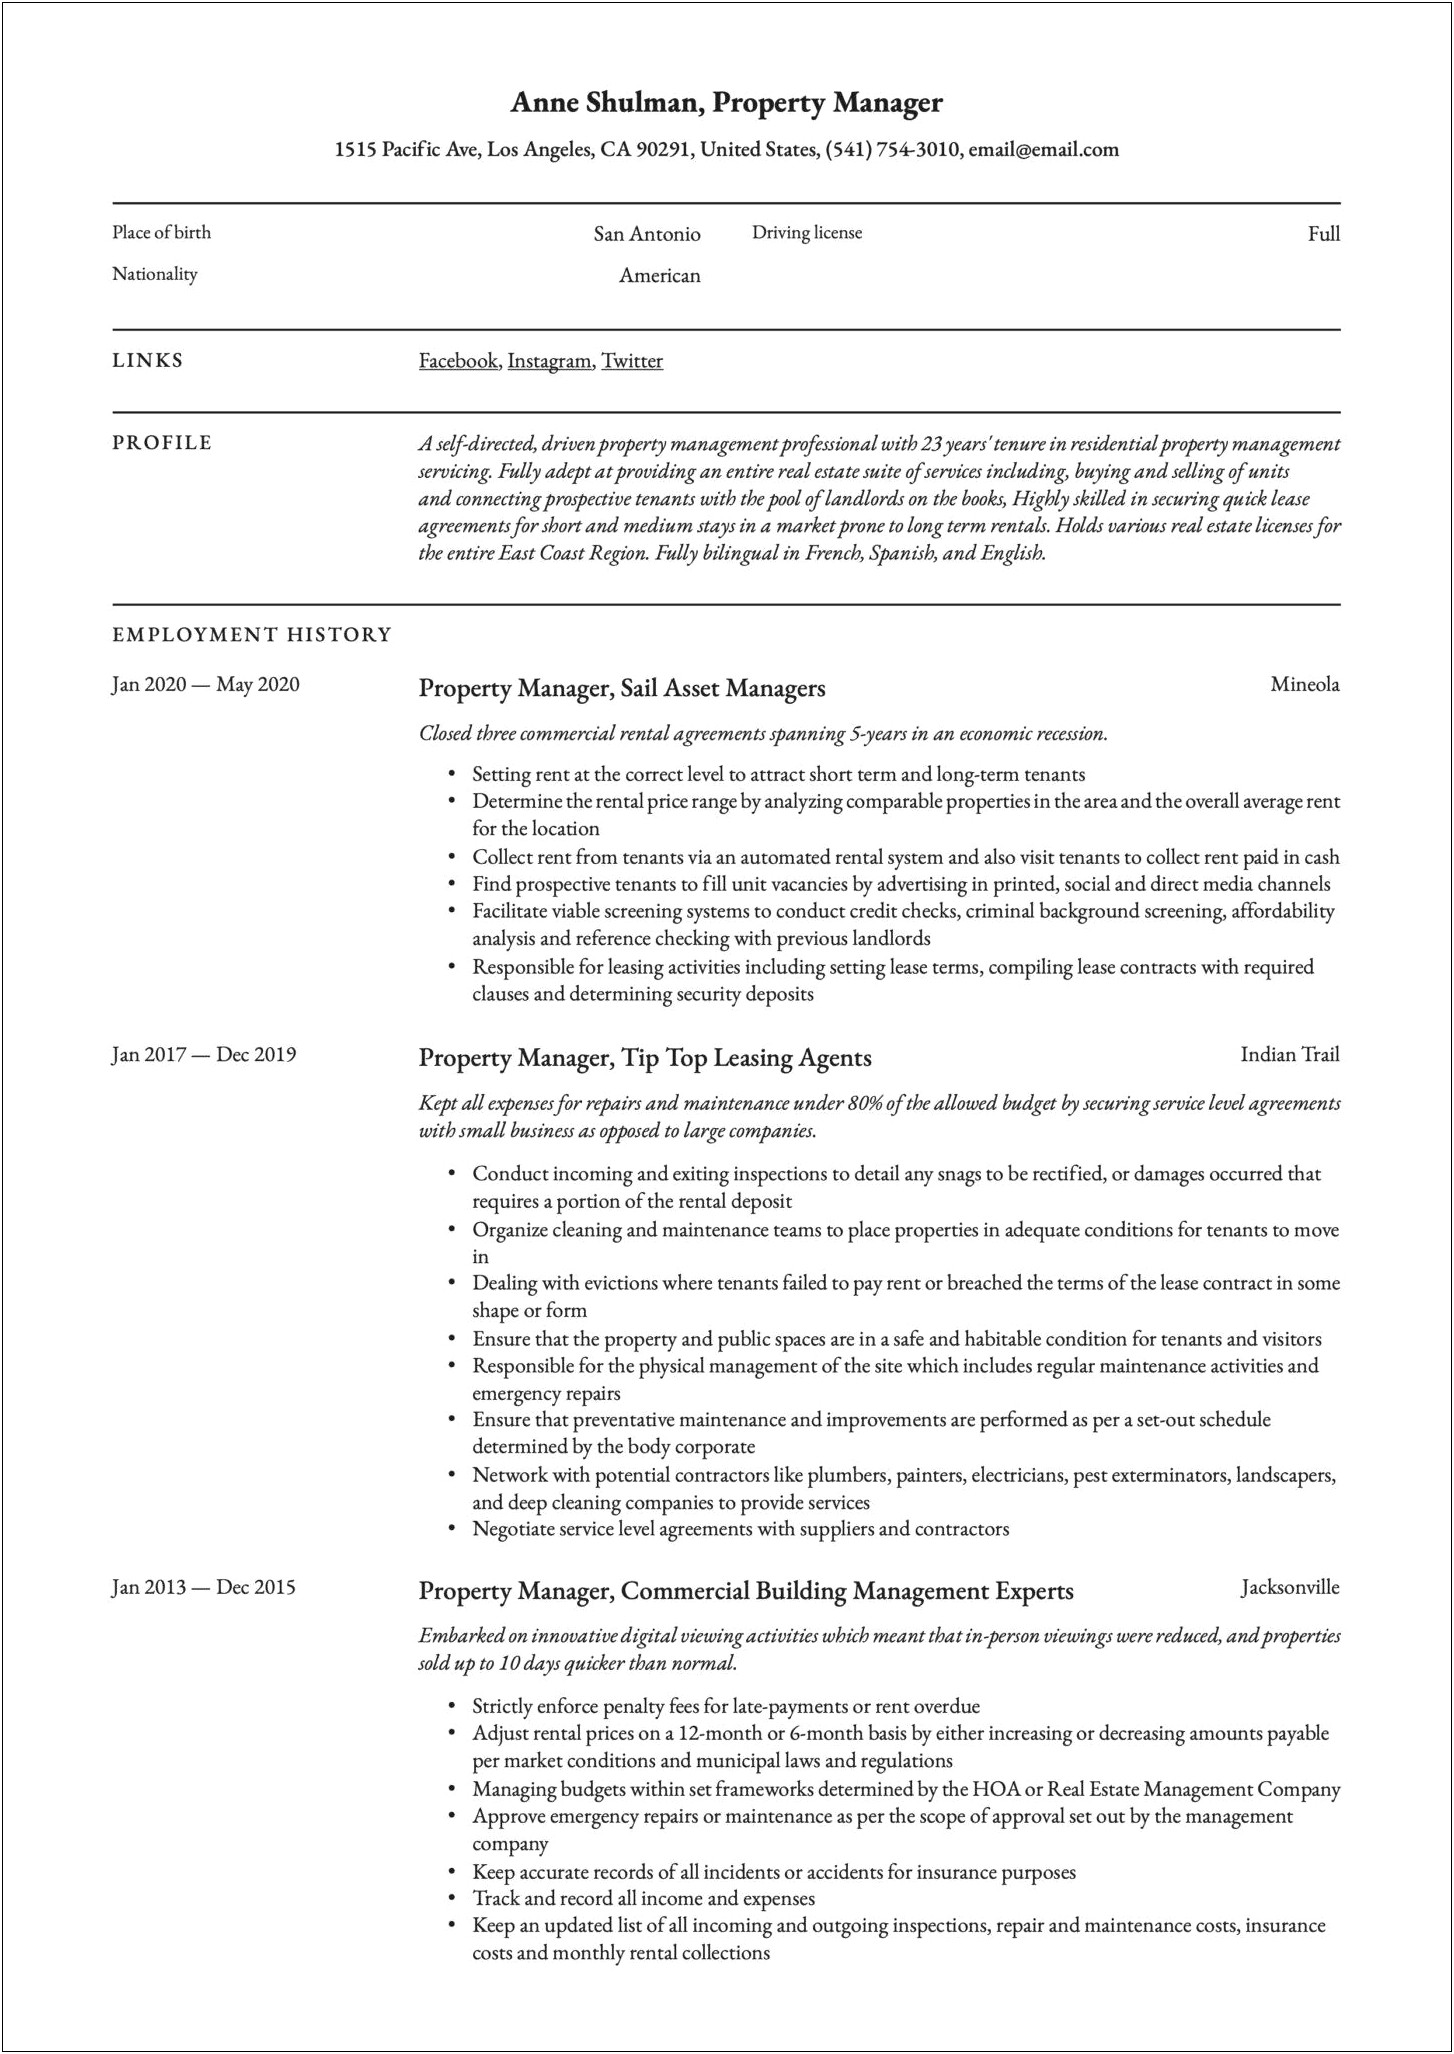 Property Manager Description For Resume